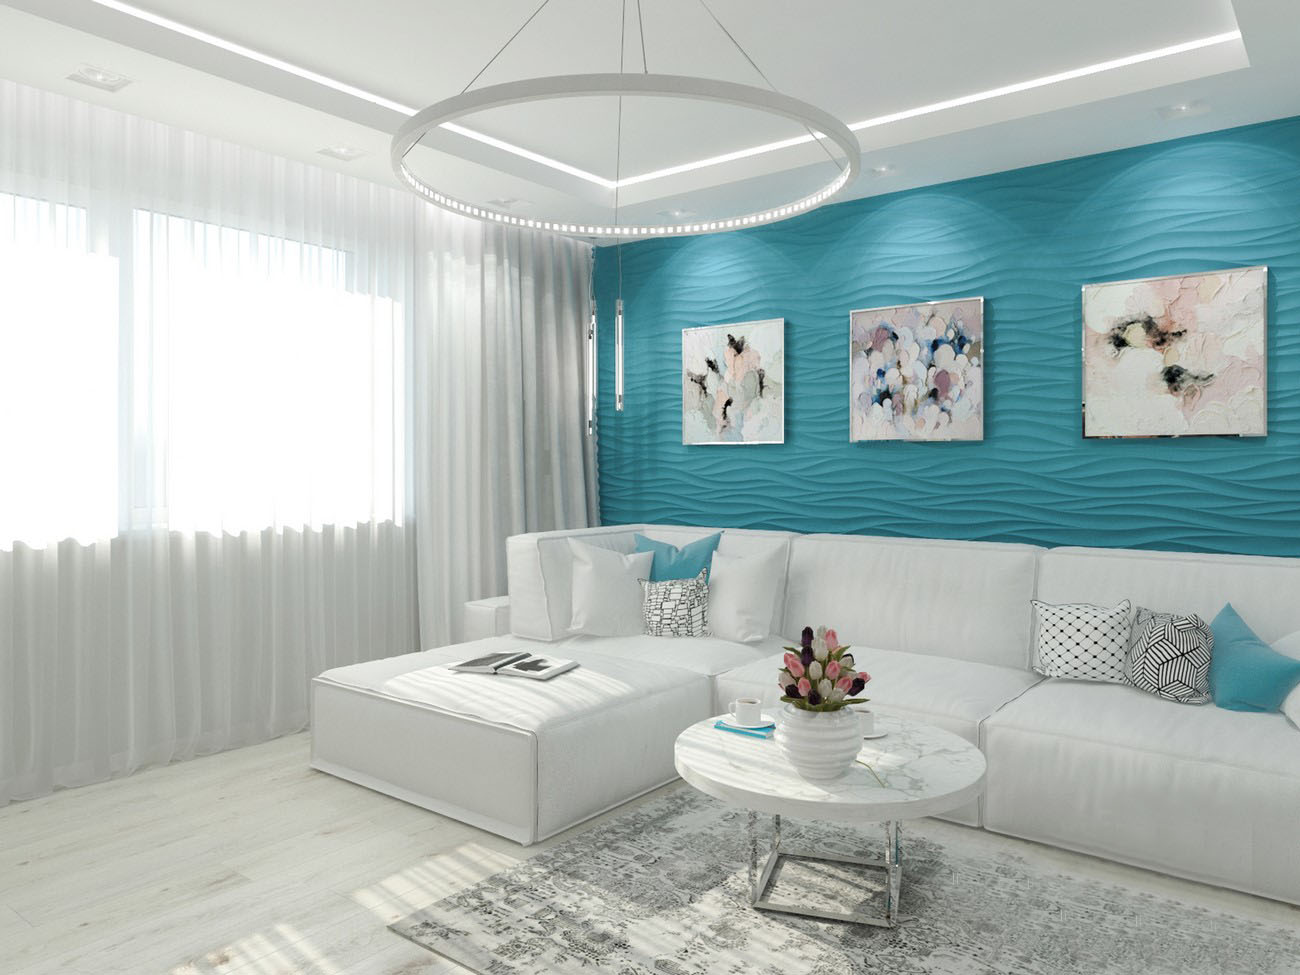 stue kombination af hvide og azurblå farver